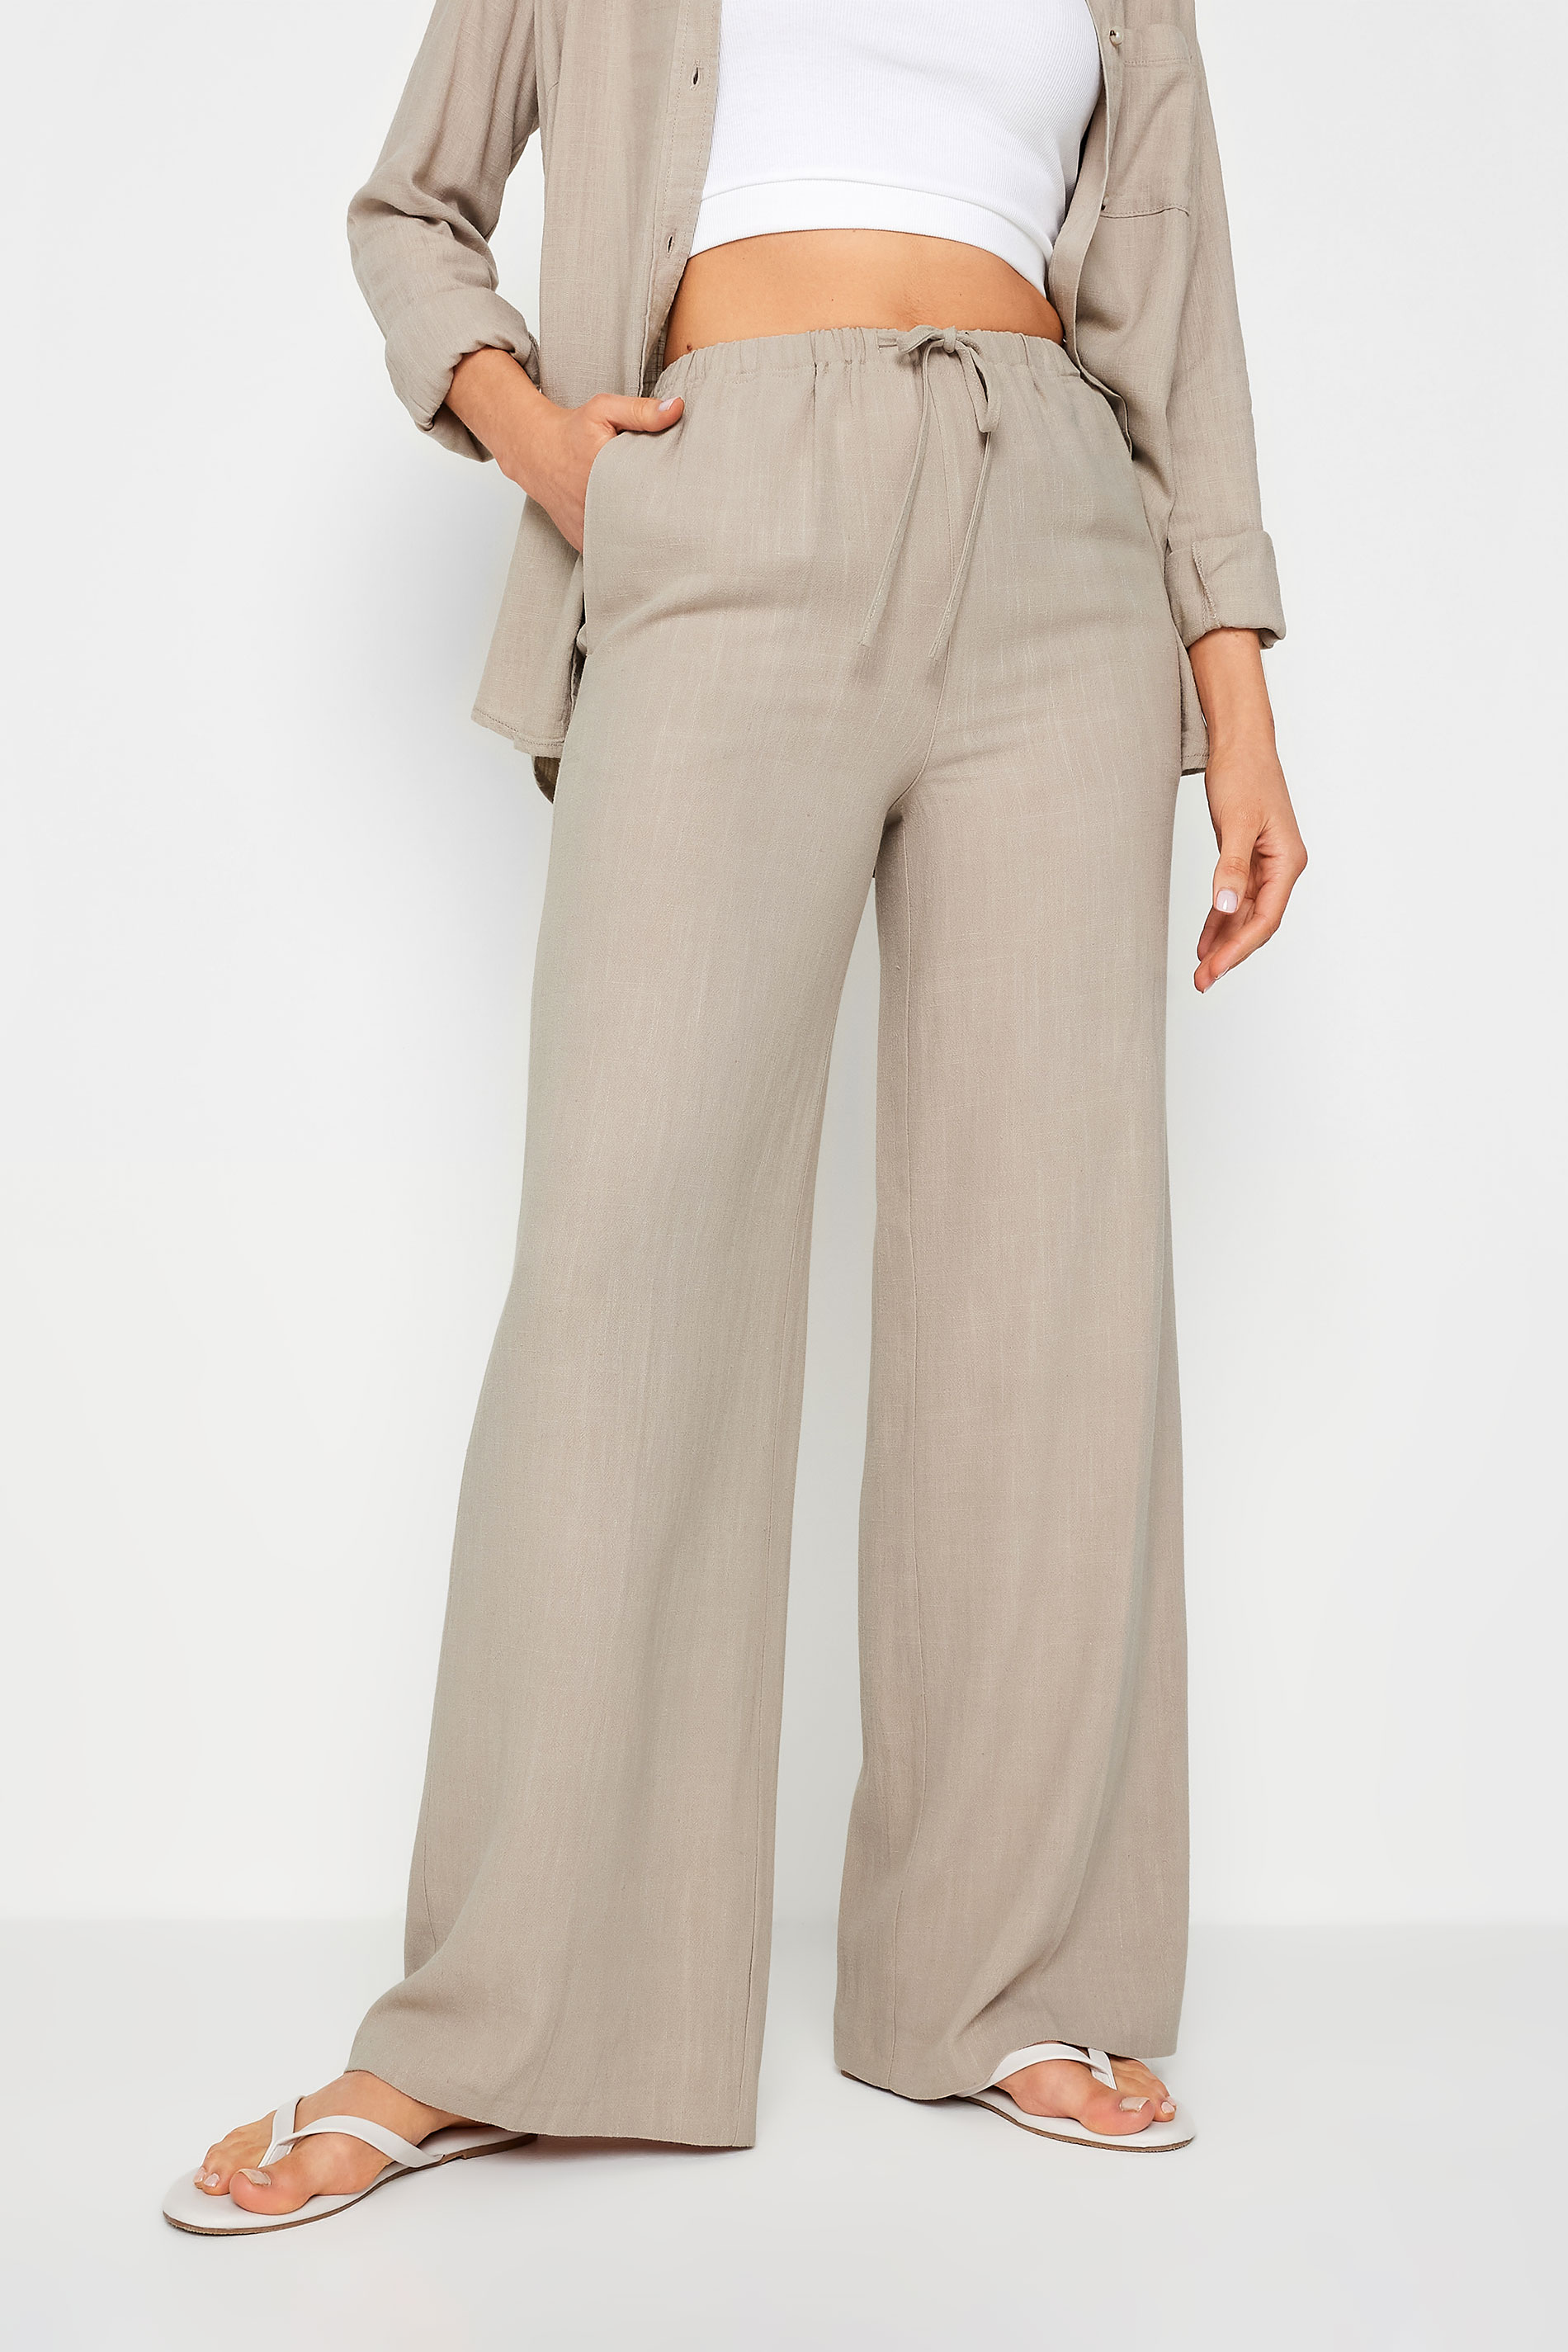 LTS Tall Women's Stone Brown Linen Tie Waist Wide Leg Trousers | Long Tall Sally  3